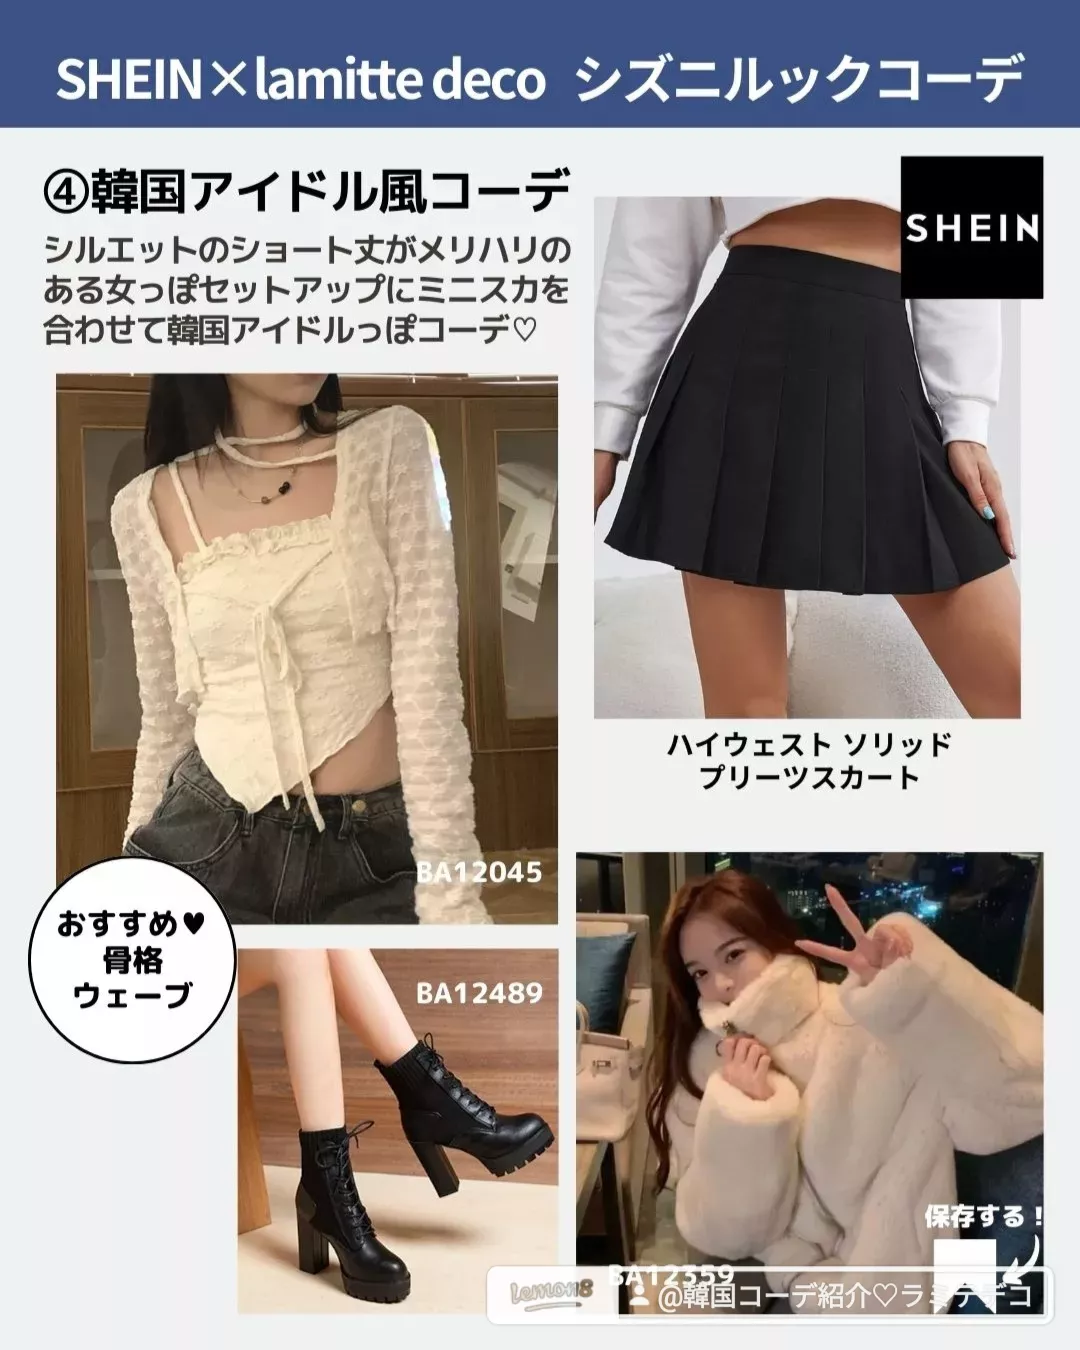 SHEIN ミニスカート - スカート